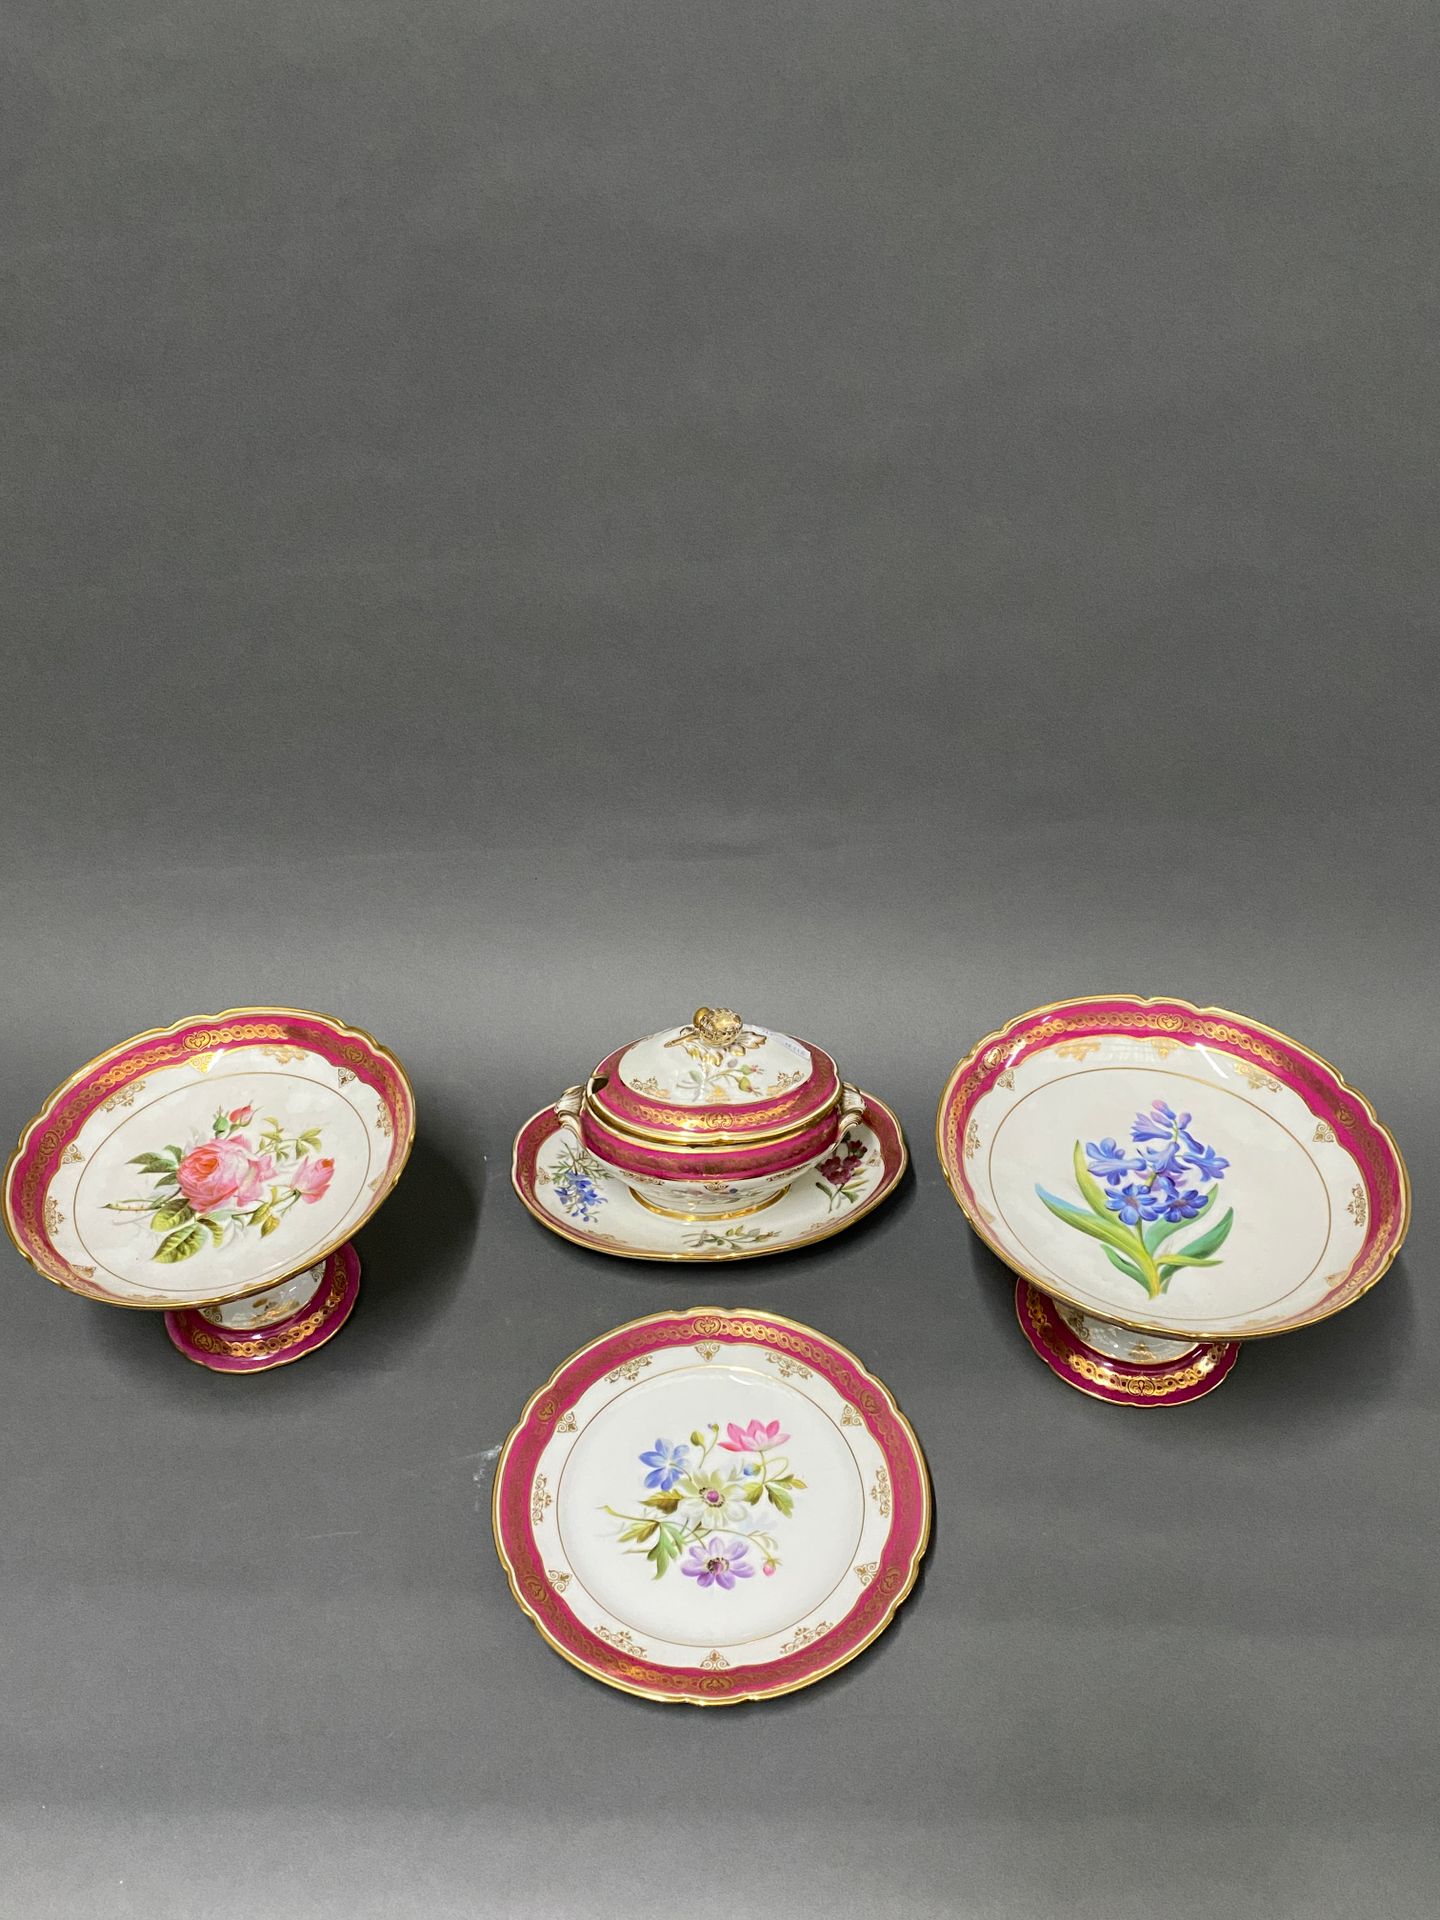 Null 这是有植物装饰的瓷器晚餐服务的一部分，由20个餐盘，两个有盖的酱缸（一个损坏），五个高脚碗和四个小盘子组成。 19世纪巴黎或英国。

直径：22厘米（&hellip;